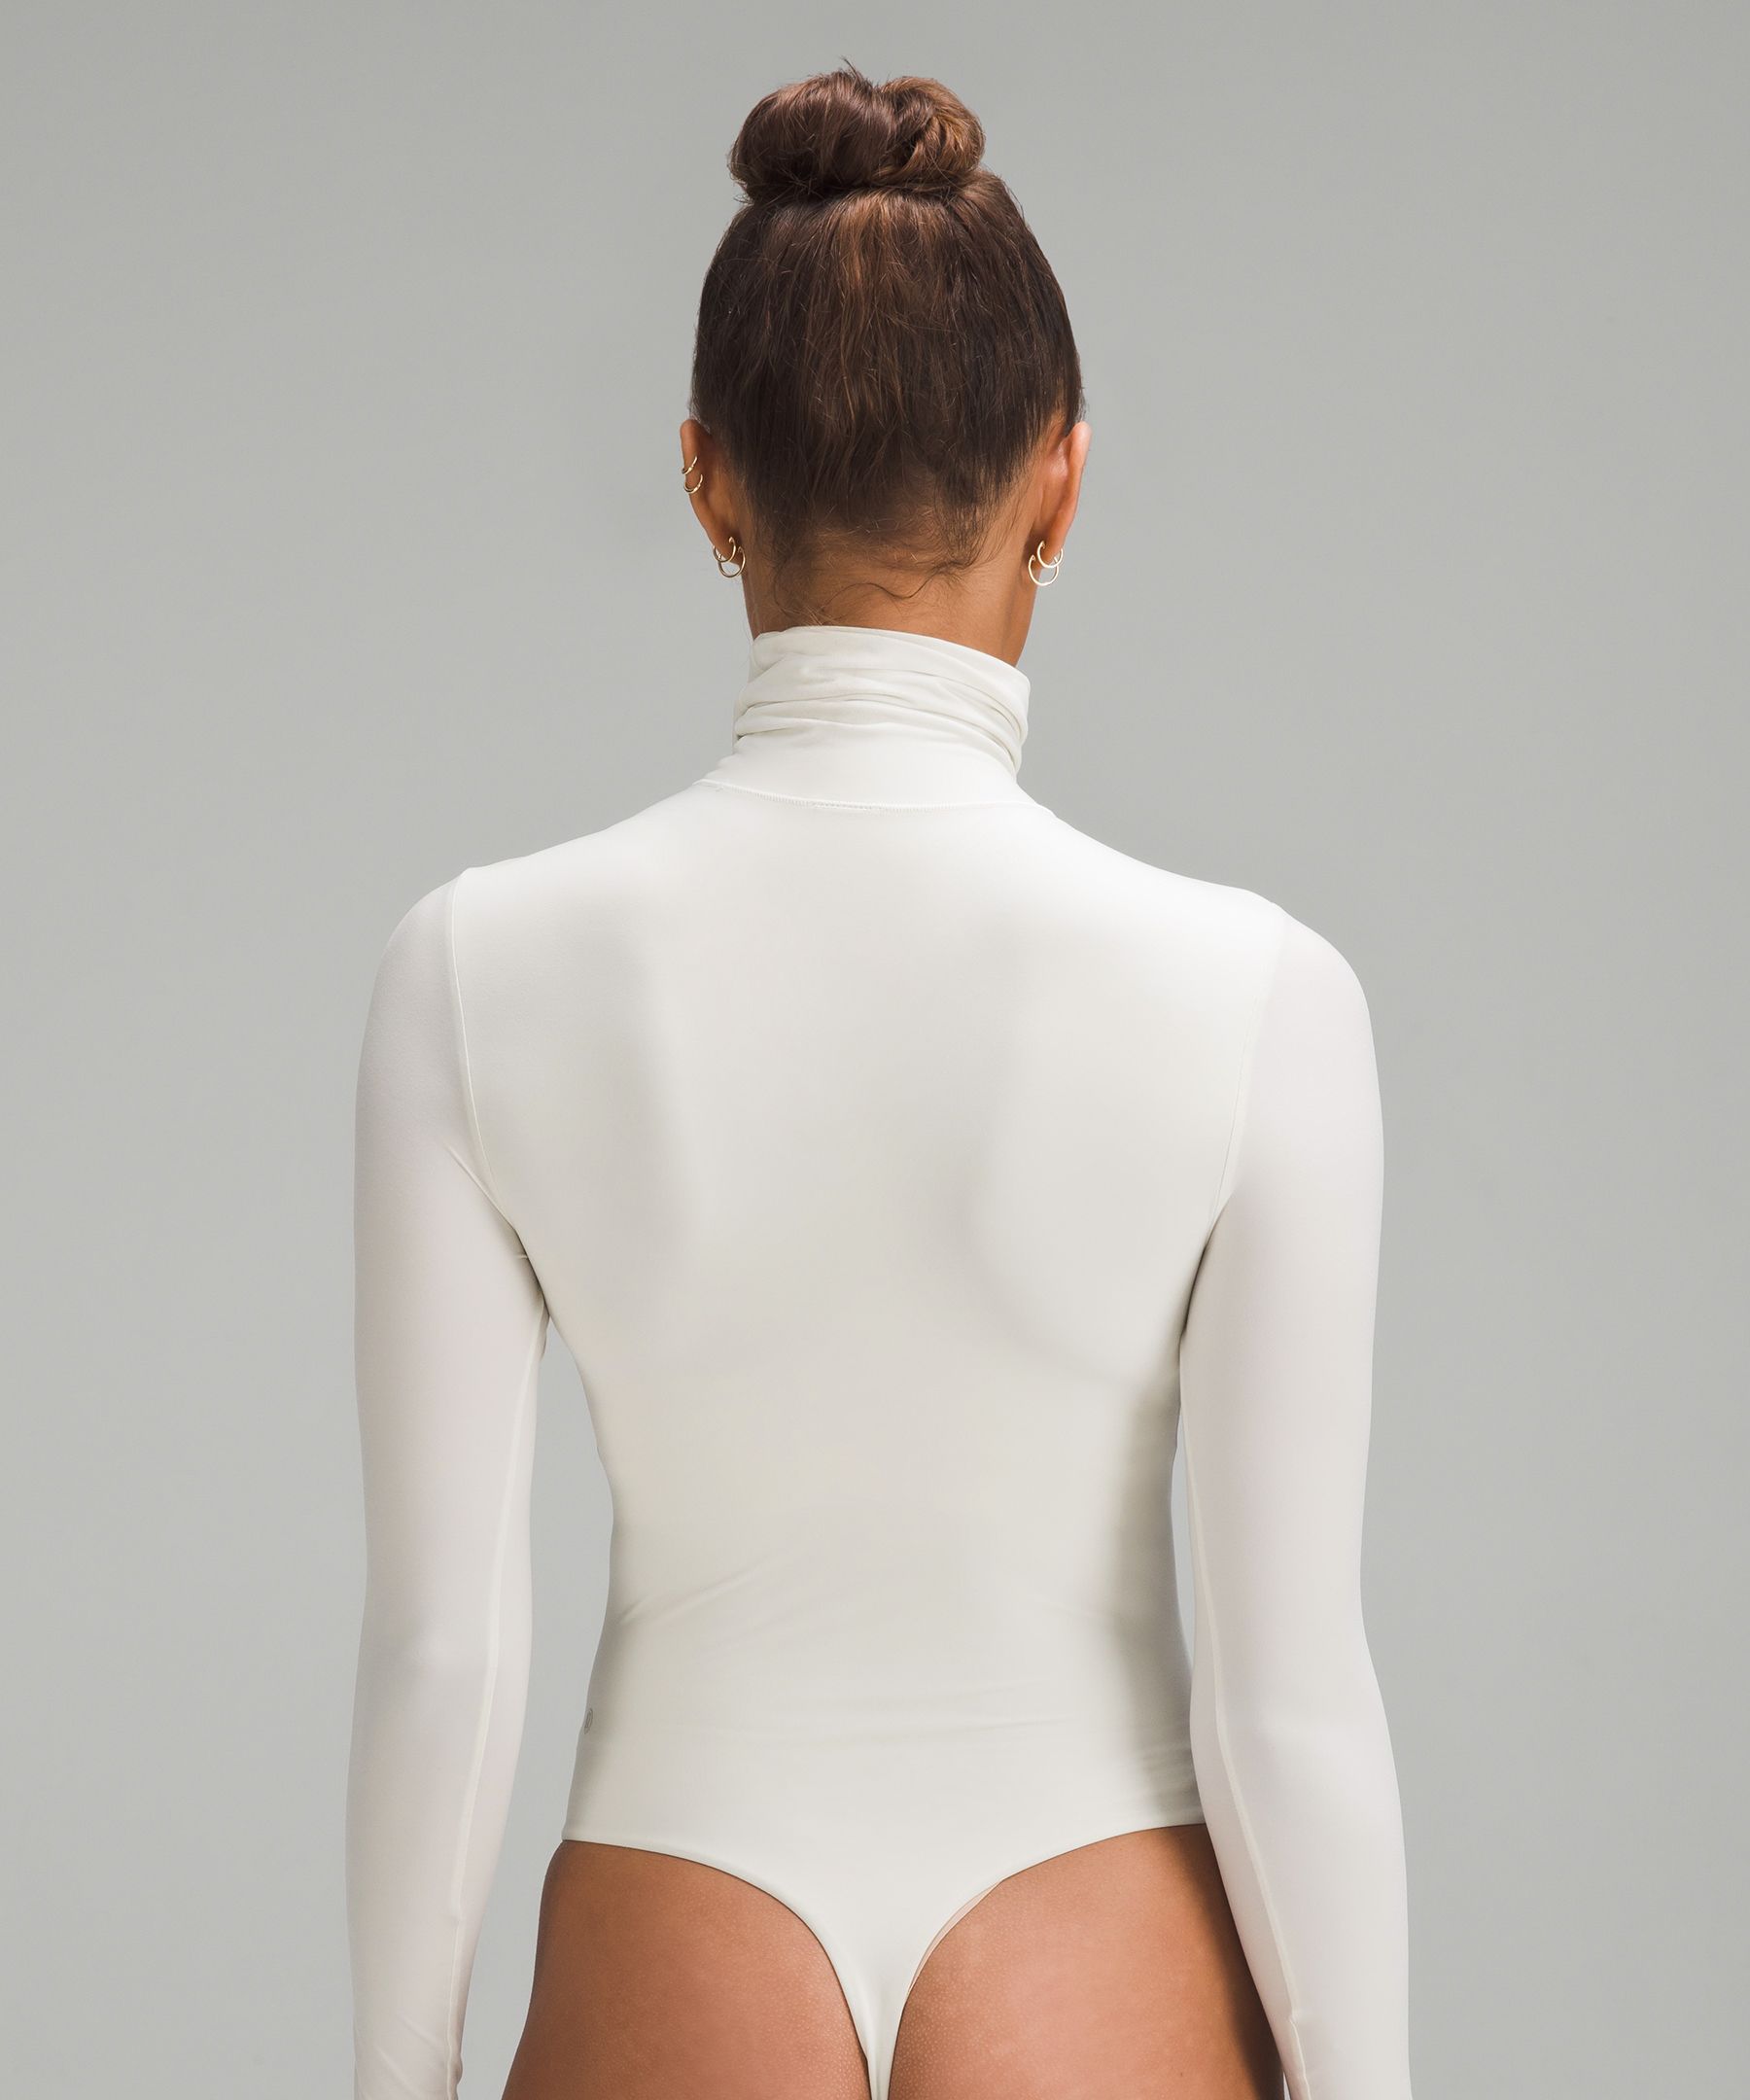 FAKKDUK Turtleneck Bodysuit for Women Knitted Lined , Long Sleeve